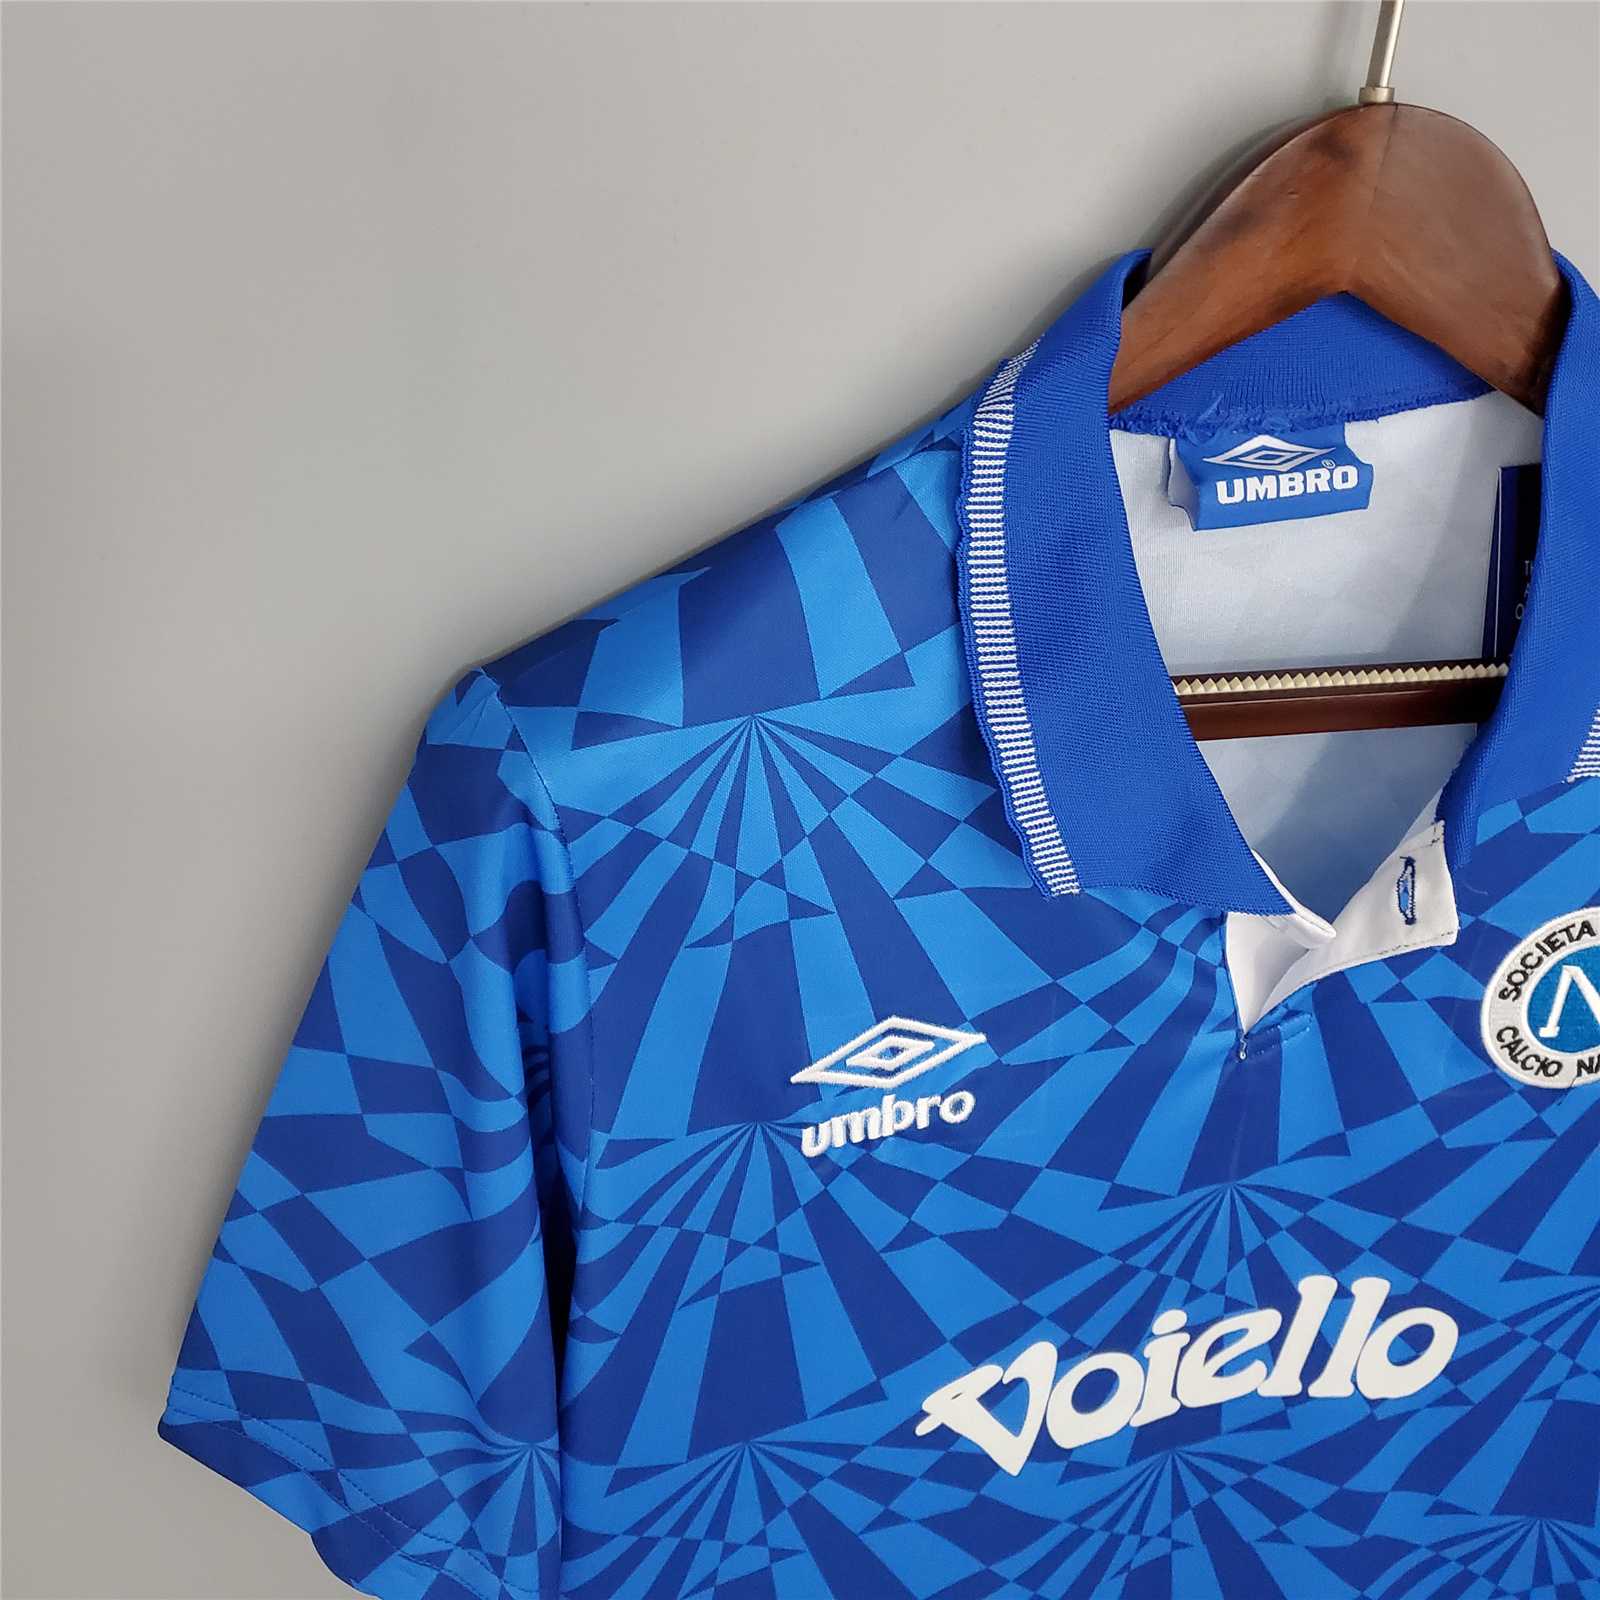 Napoli 1991-93 Home Retro Jersey